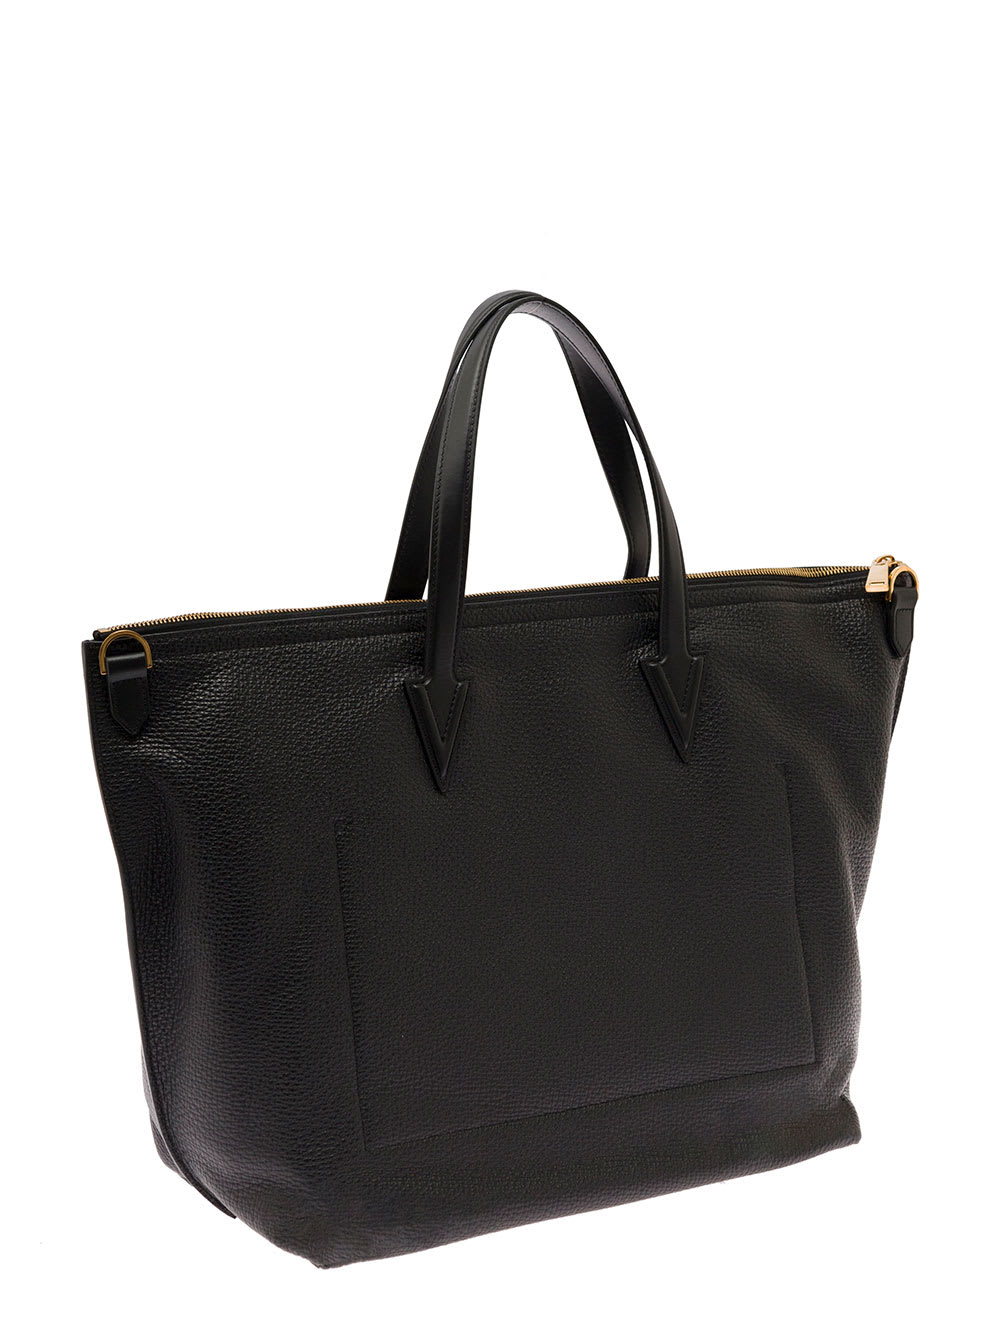 Versace Tote Bag Pelle